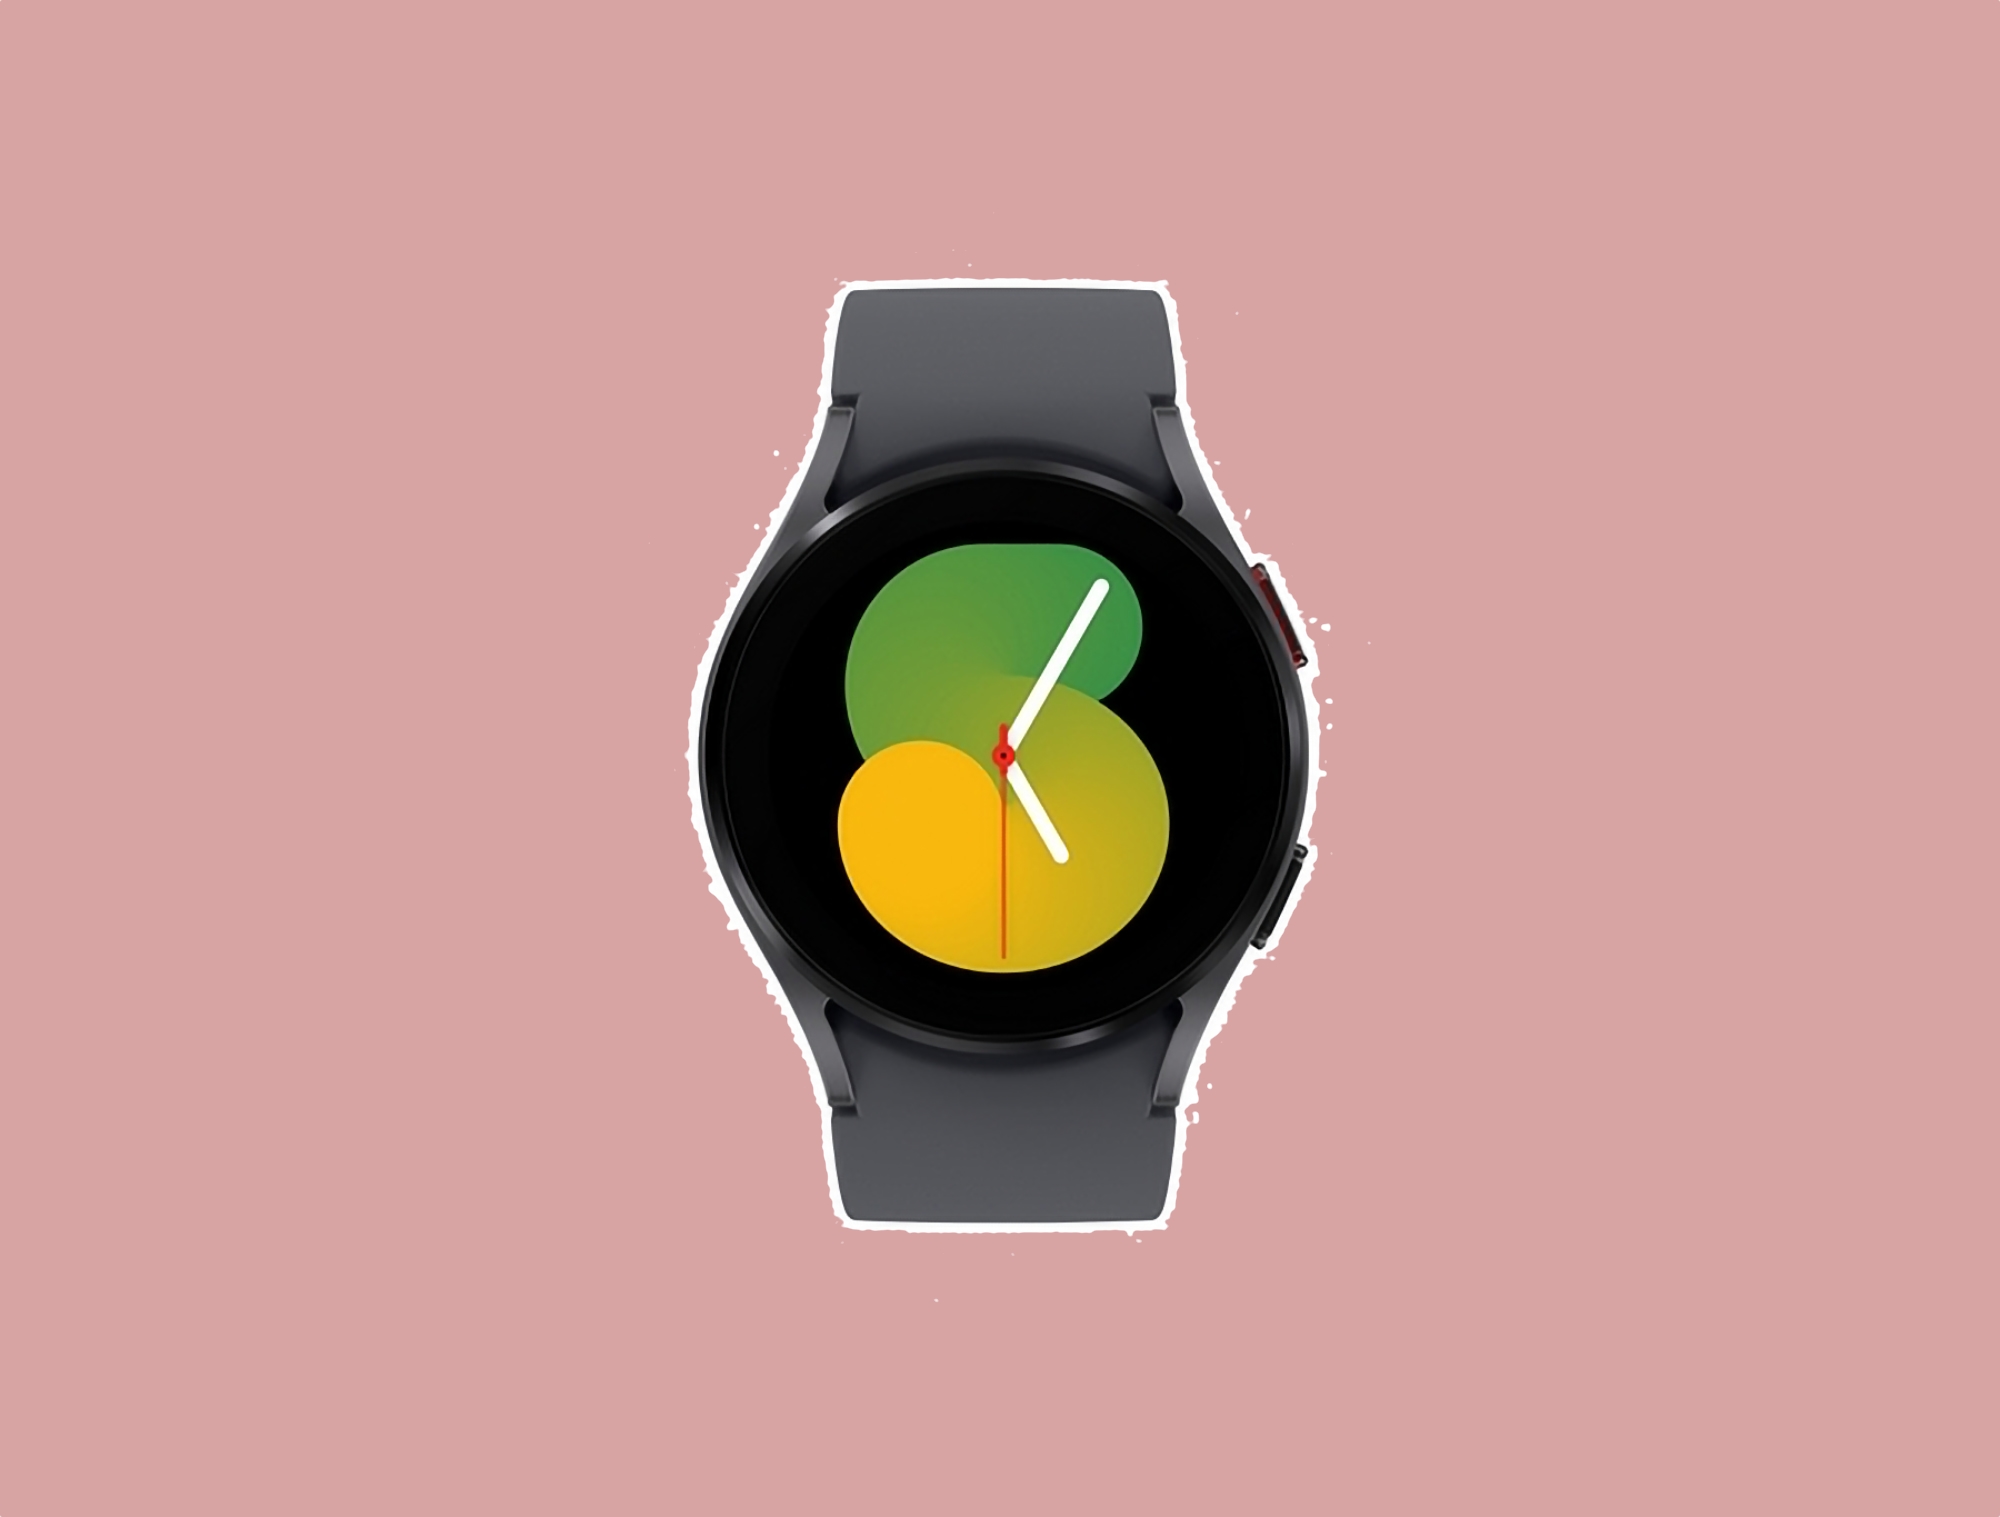 Galaxy Watch 5-användare i Europa har börjat få sin One UI Watch 5 som drivs av Wear OS 4